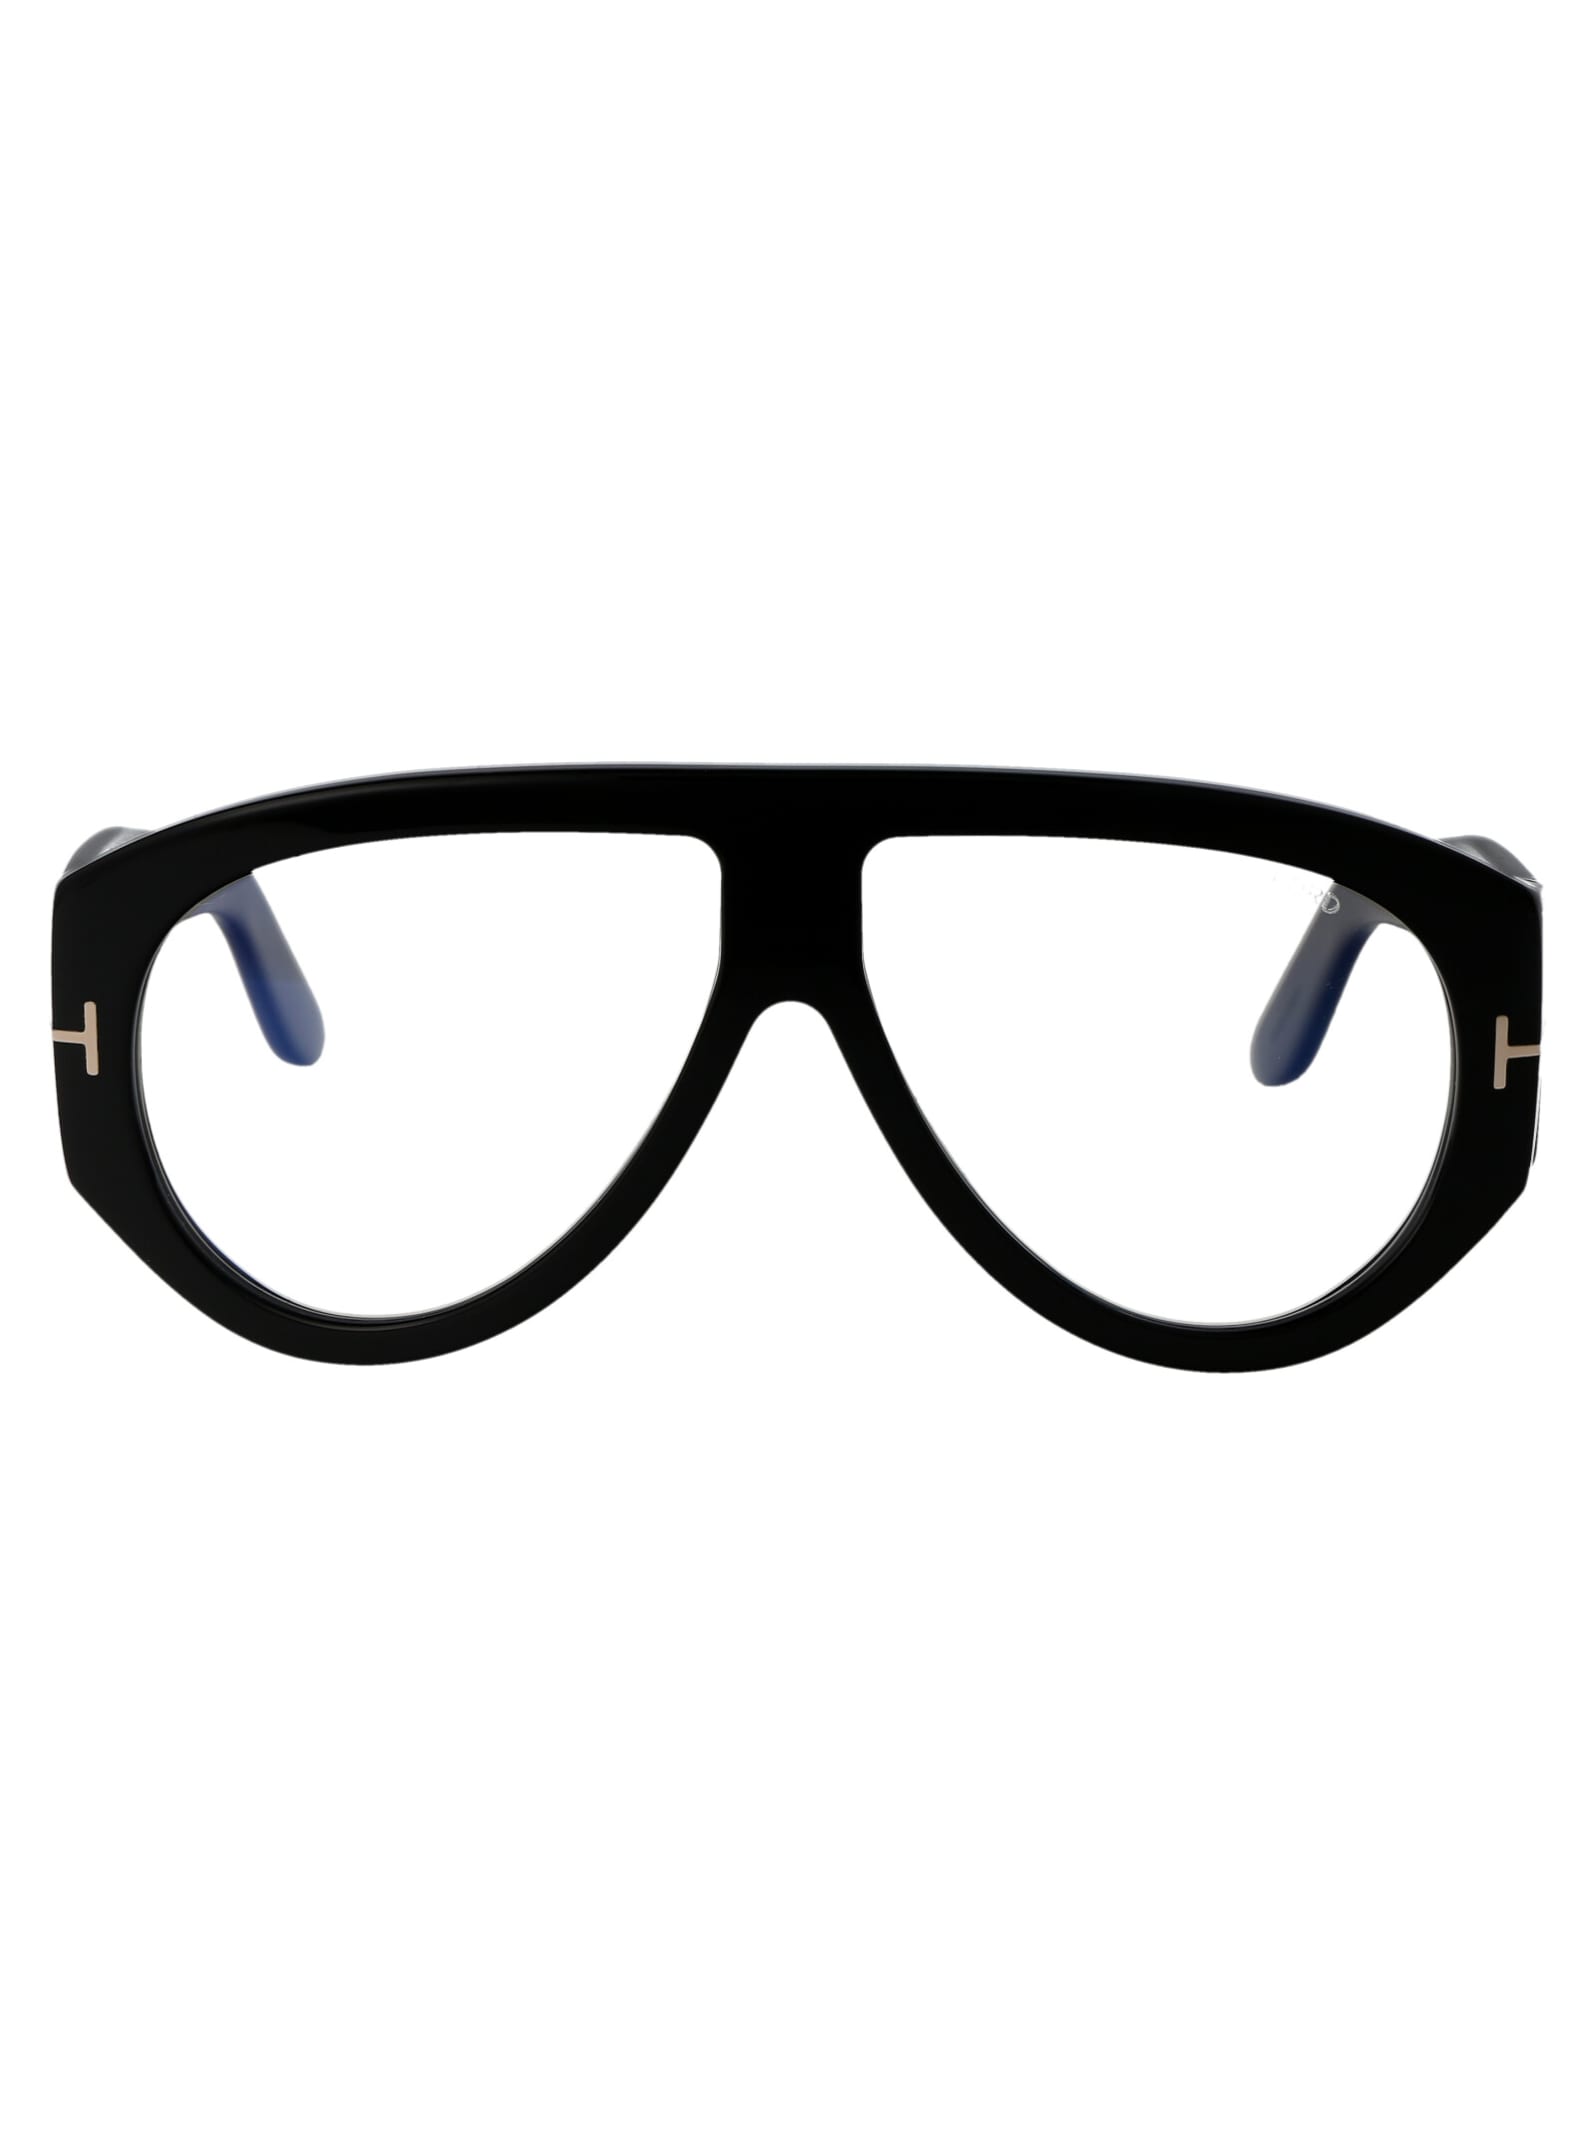 Ft5958-b Glasses